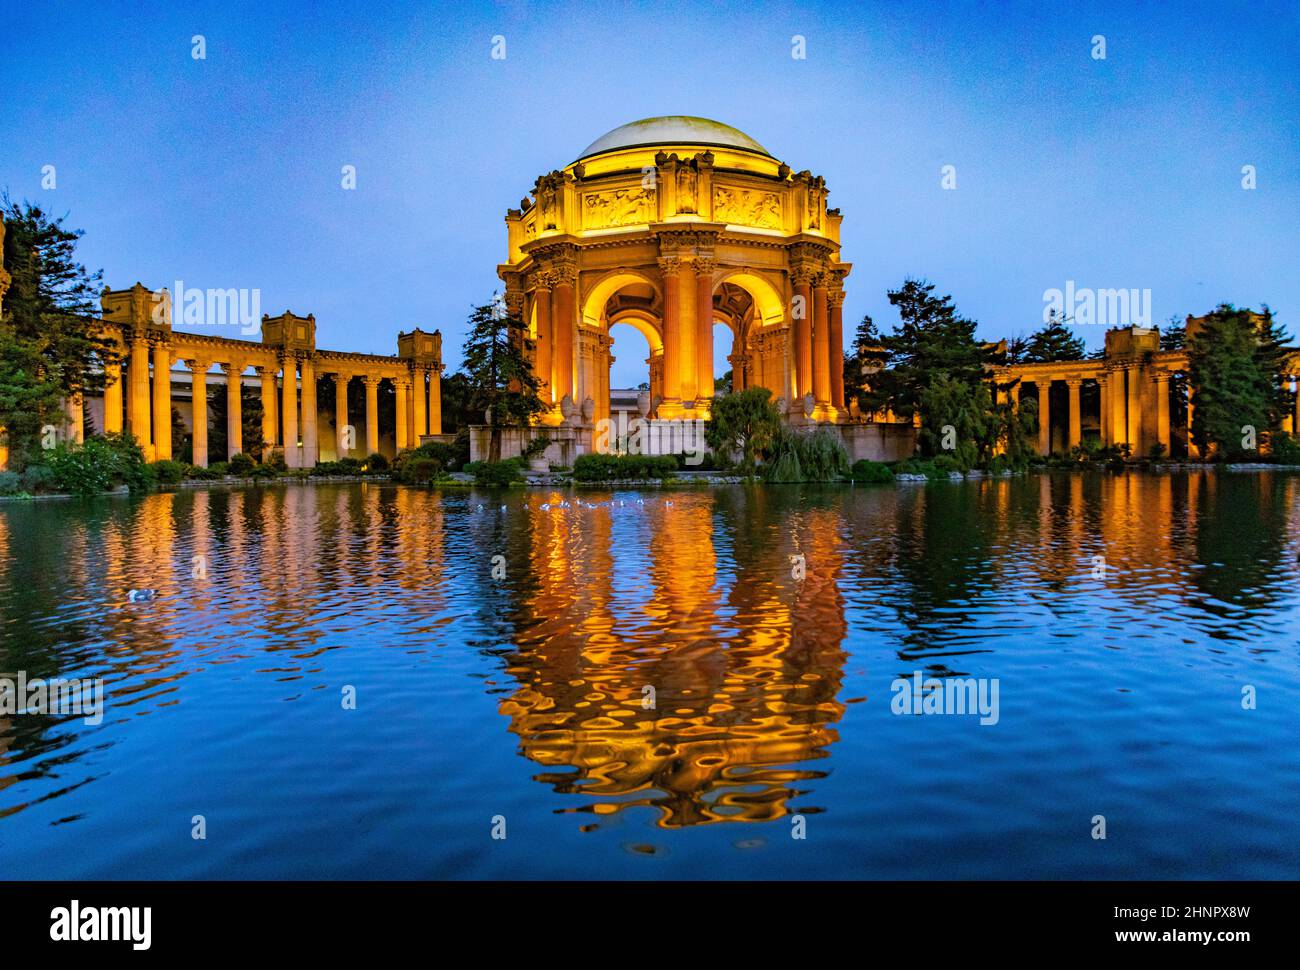 Le Palais des Beaux-Arts dans le quartier de la Marina de nuit, San Francisco Banque D'Images